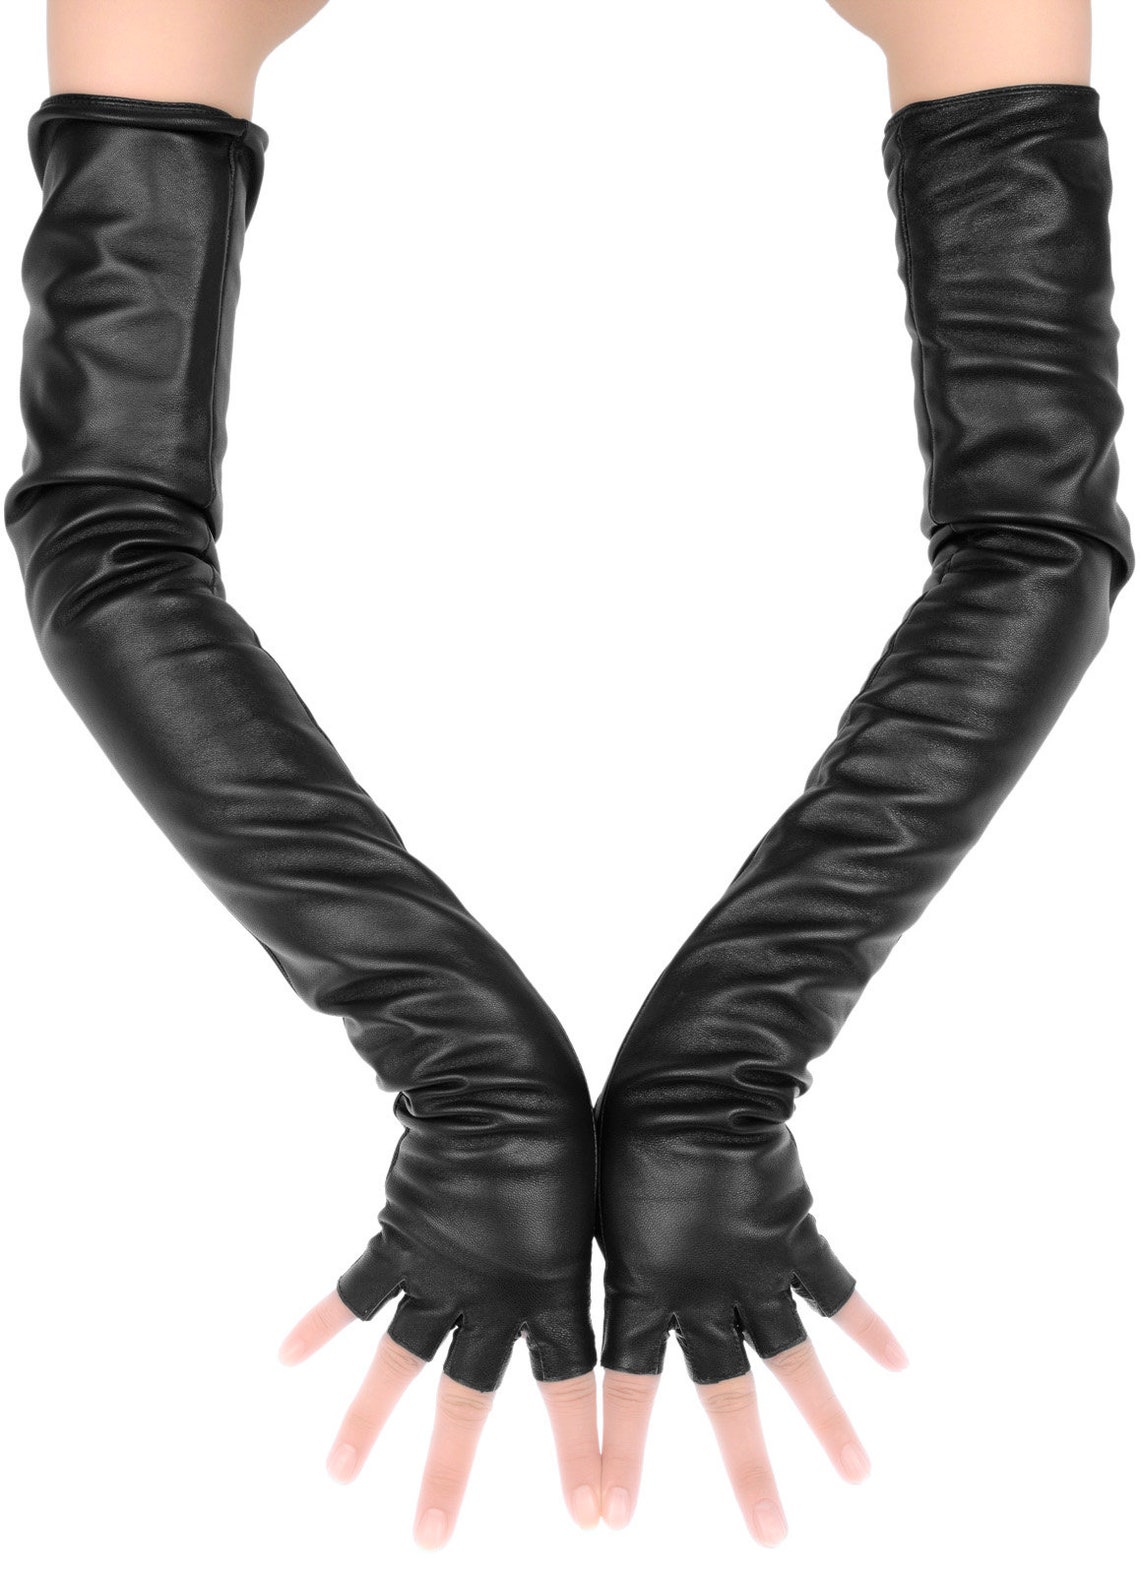 Extra Long Black Fingerless Leather Gloves - Etsy